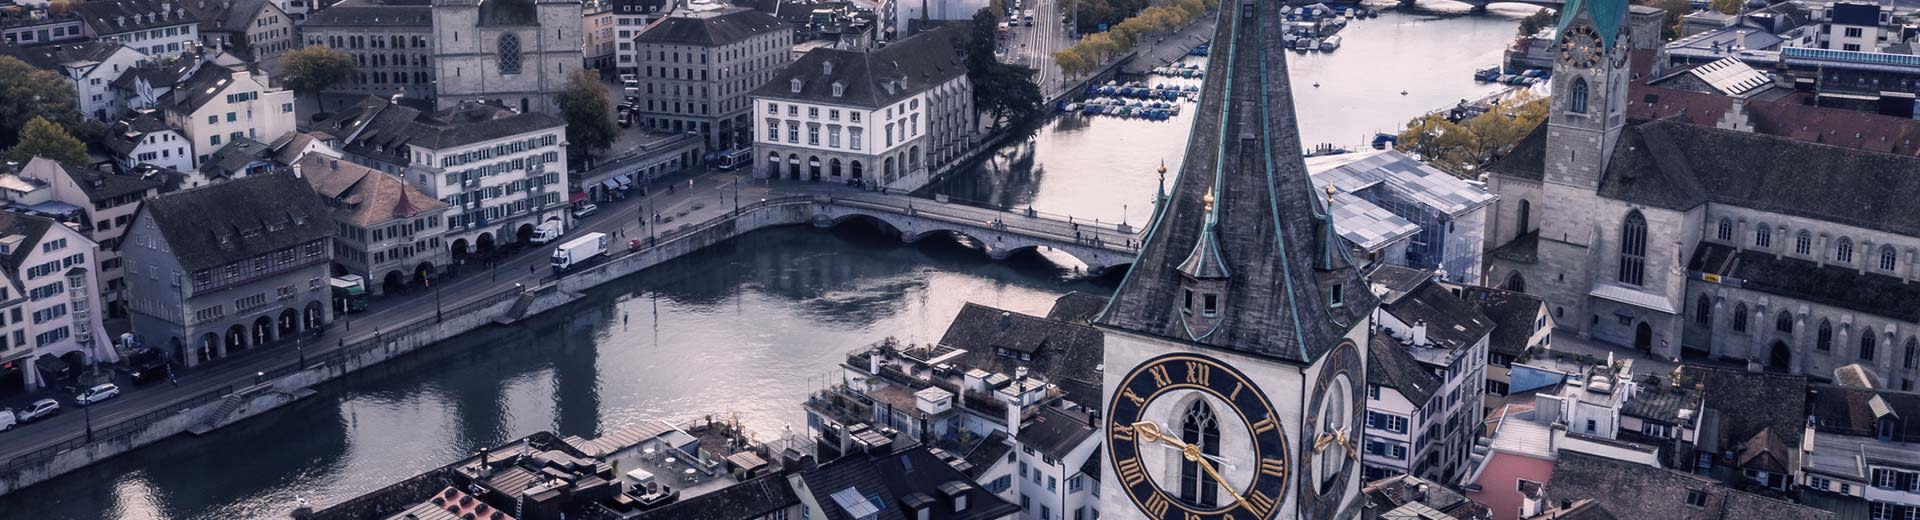 Vue aérienne de la rivière Limmat à Zurich au crépuscule ou à l'aube, avec une imposante cathédrale avant elle.